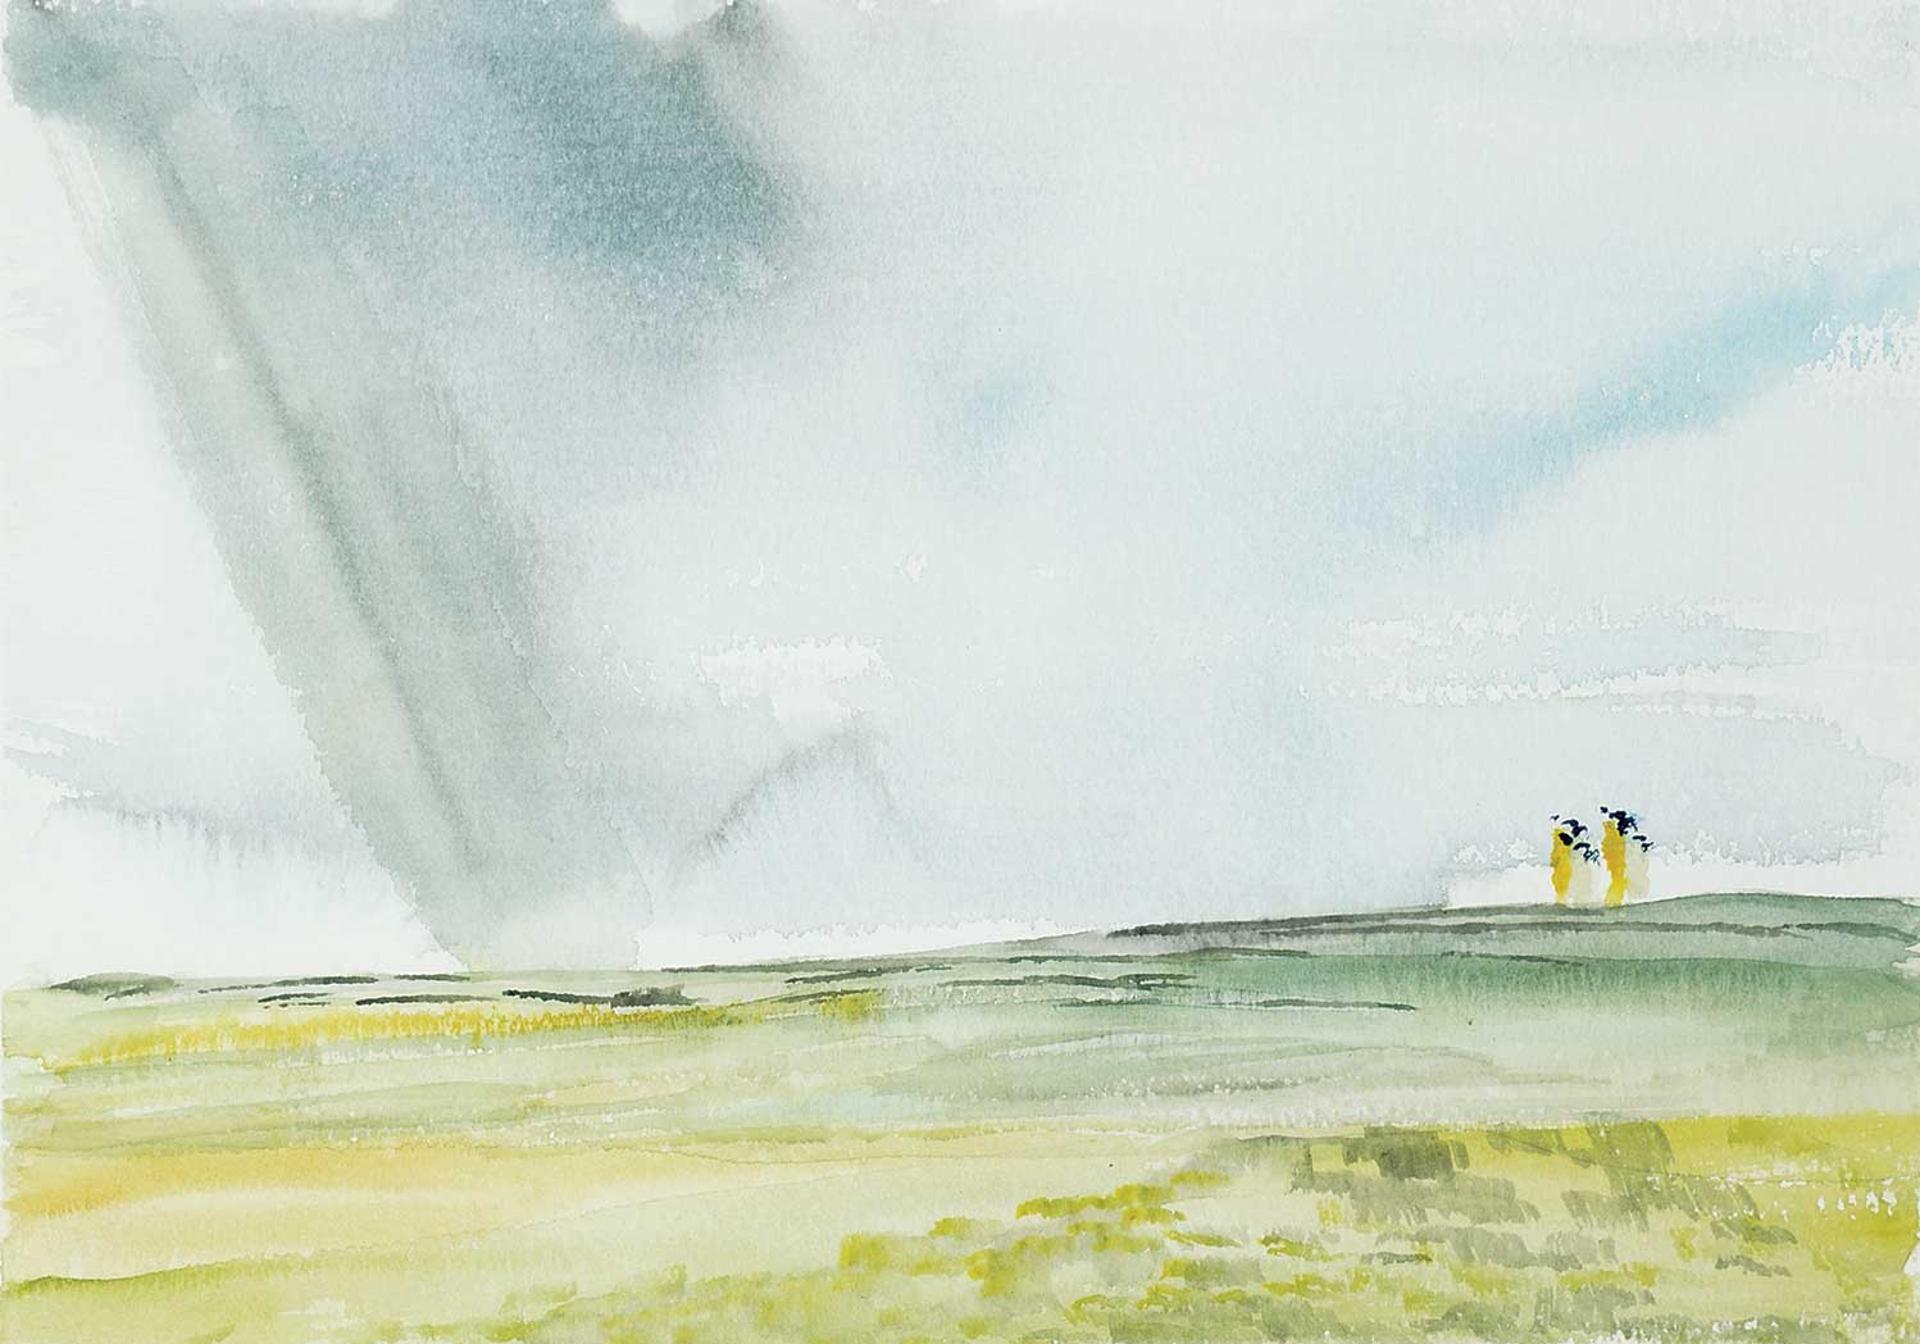 John R. Turner - Untitled - Rain on the Prairies